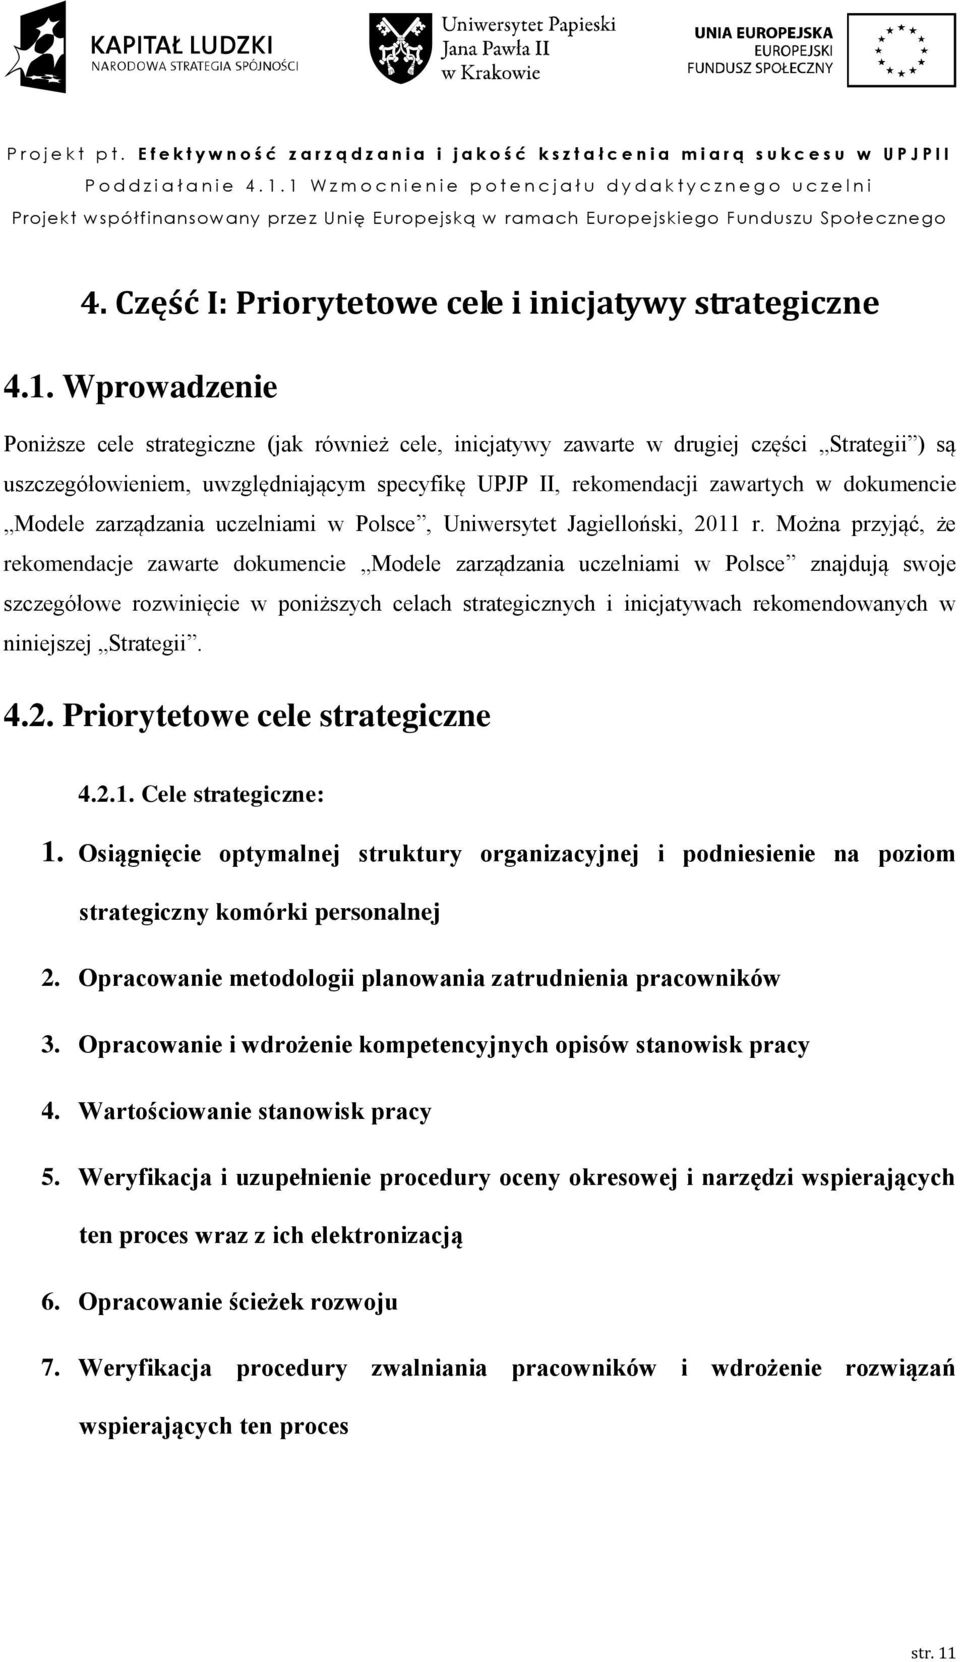 Modele zarządzania uczelniami w Polsce, Uniwersytet Jagielloński, 2011 r.